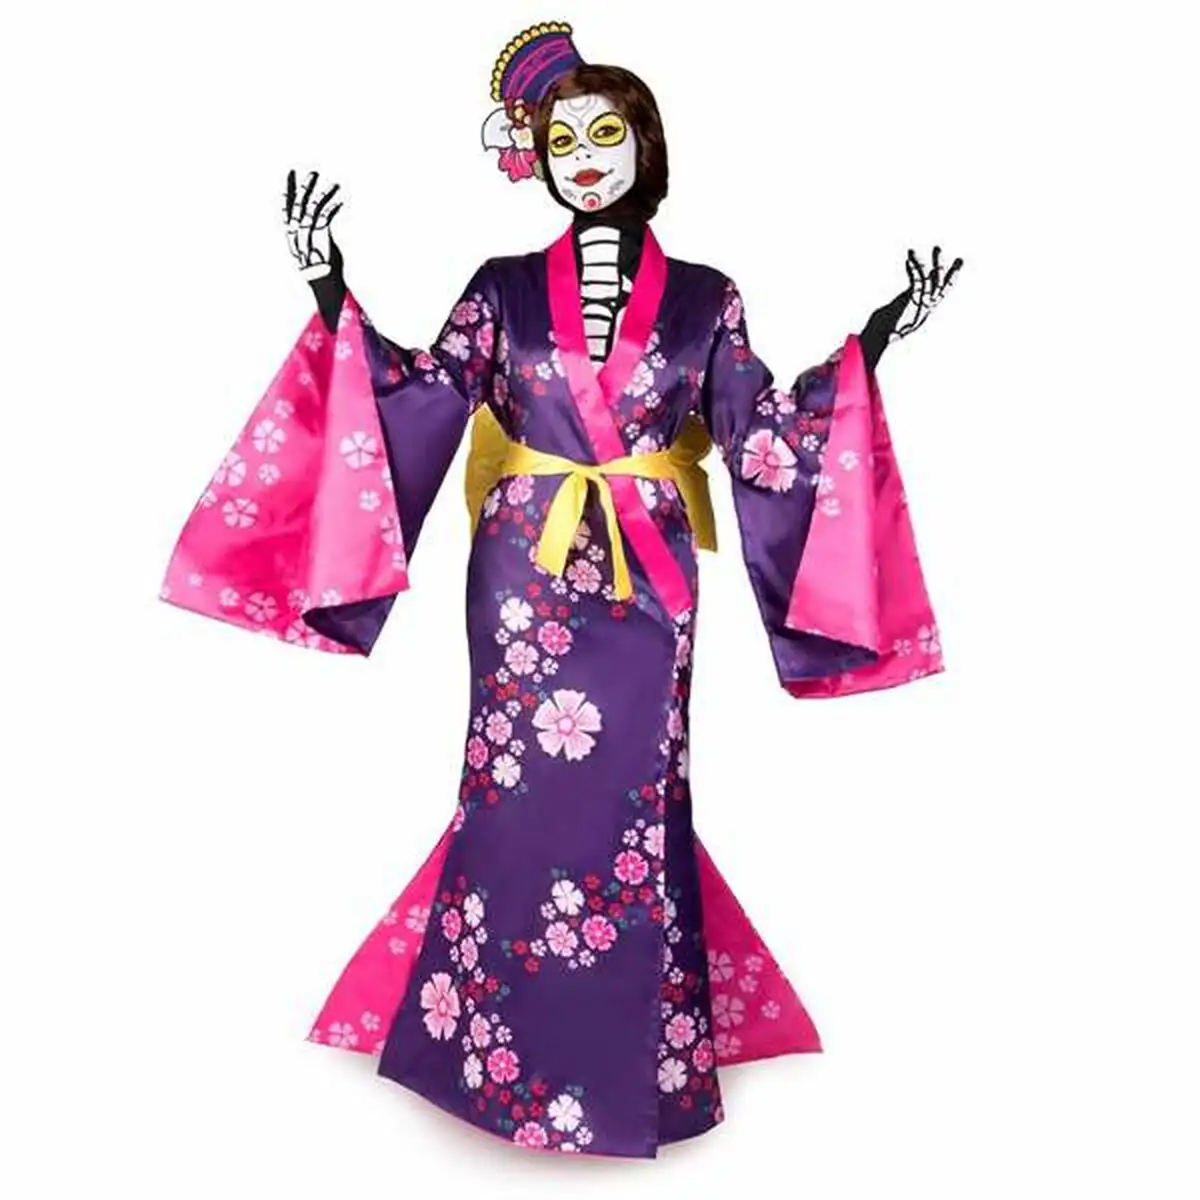 Deguisement pour adultes my other me mariko kimono_7299. DIAYTAR SENEGAL - L'Art de Choisir, l'Art de Vivre. Explorez notre univers de produits soigneusement sélectionnés pour vous offrir une expérience shopping riche et gratifiante.